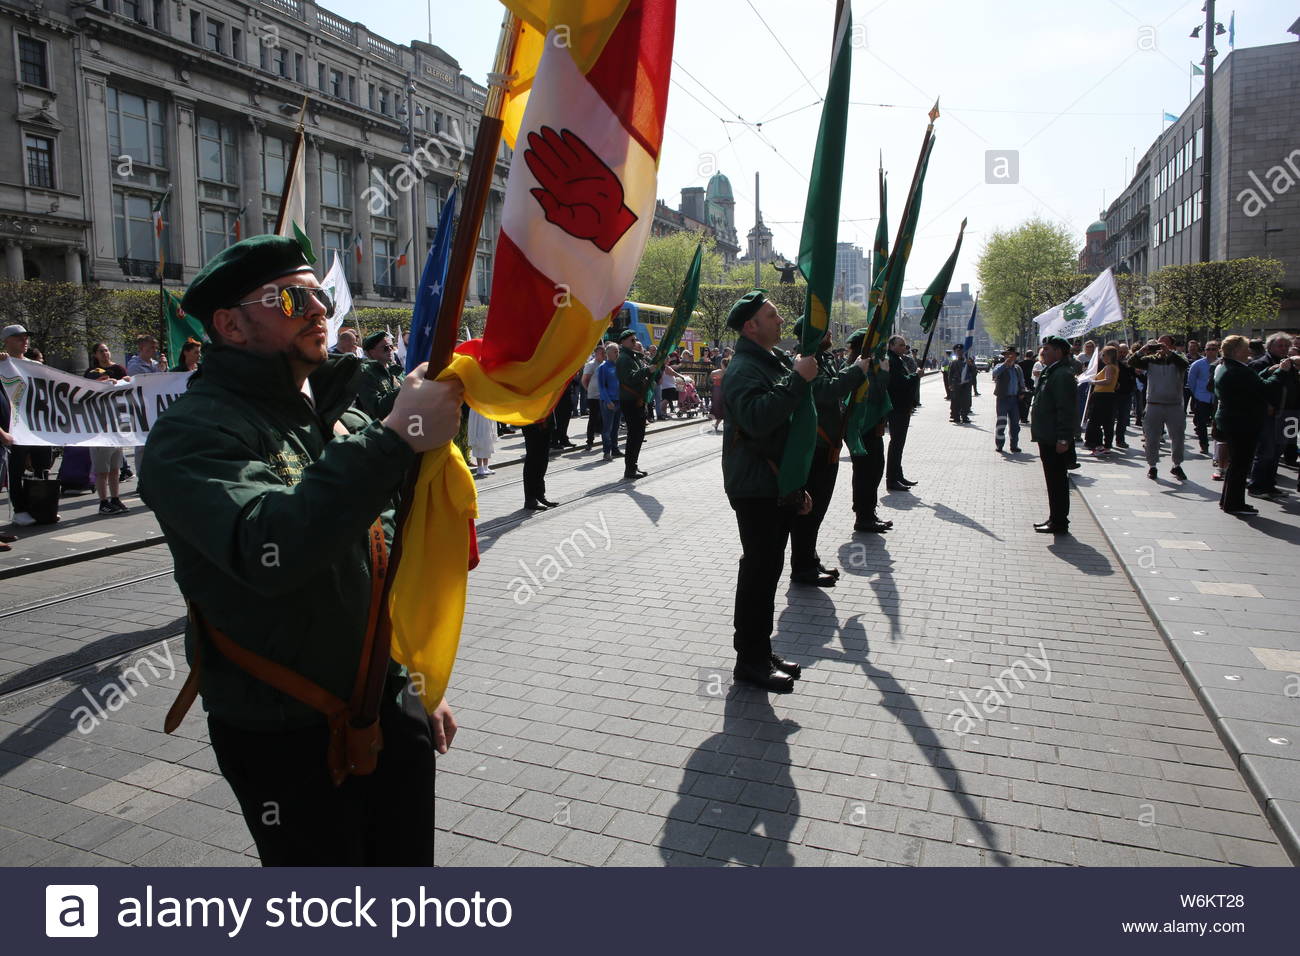 Un défilé militaire a eu lieu à Dublin pour commémorer le 1916 à la hausse. Militants en uniforme de style militaire ont défilé à Dublin, suivi d'un s Banque D'Images